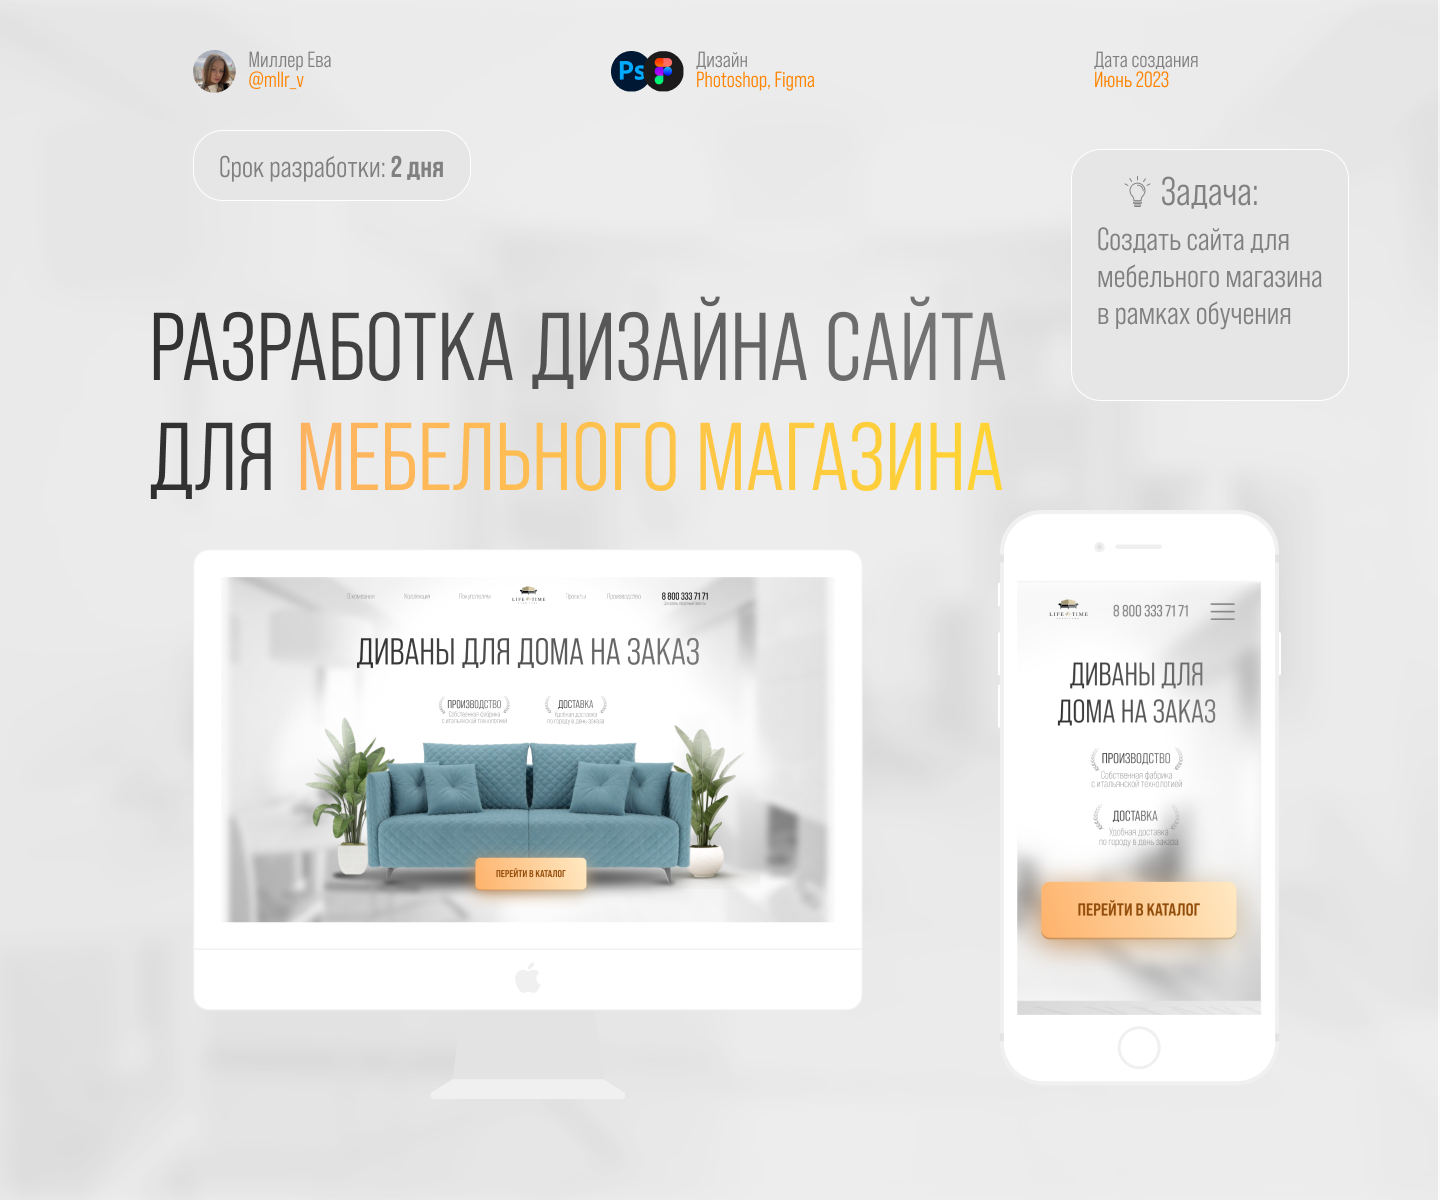 Разработка дизайна сайта для мебельного магазина